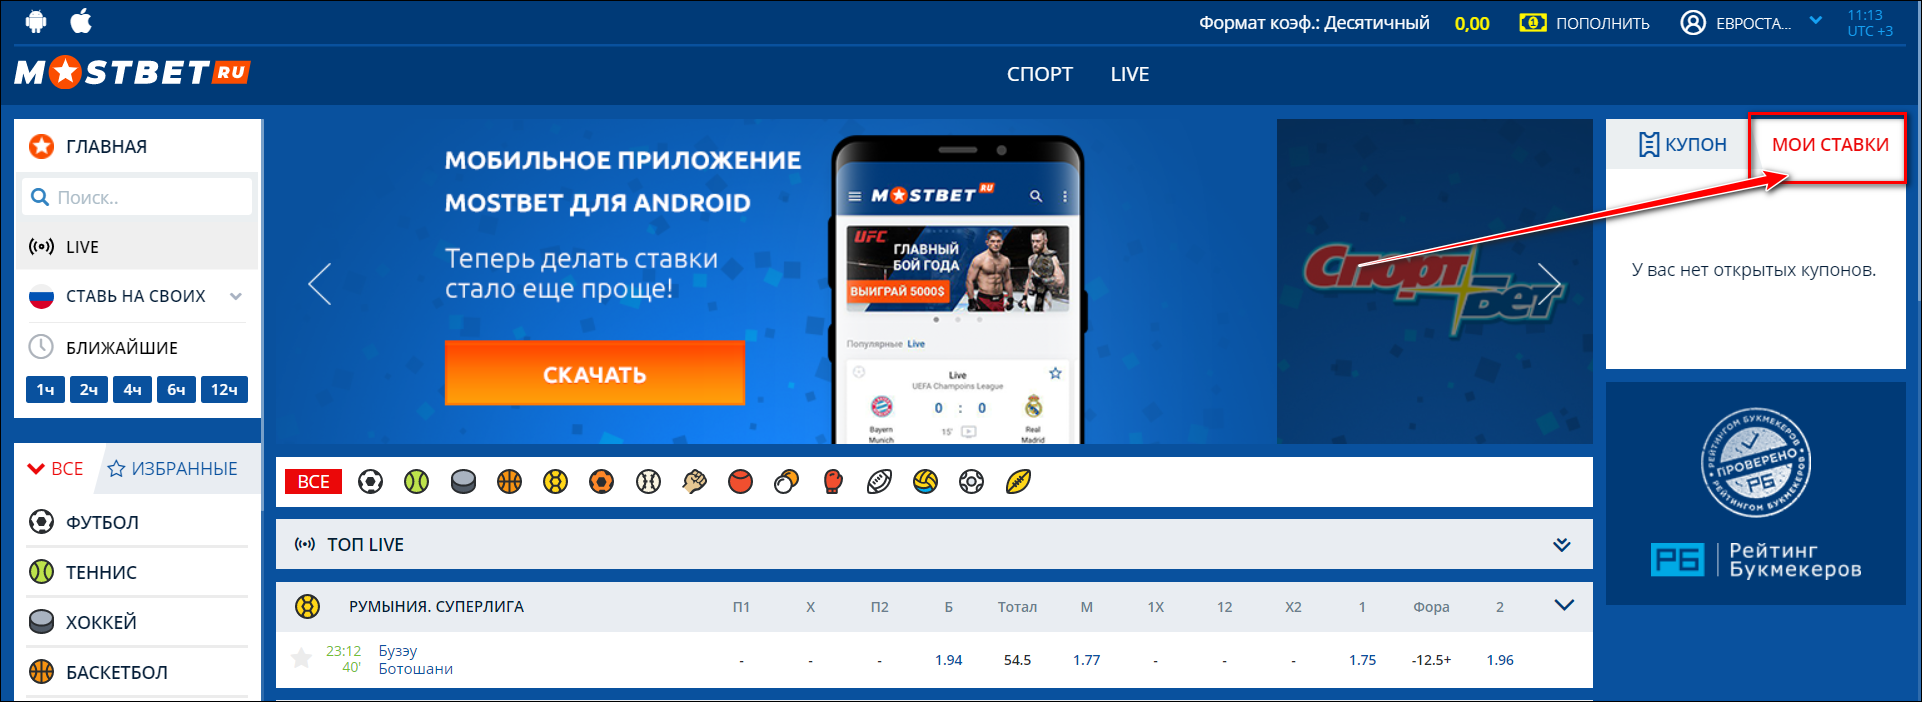 Мостбет зеркало сегодня rus ставки на спорт регистрация букмекер рейтинг рф